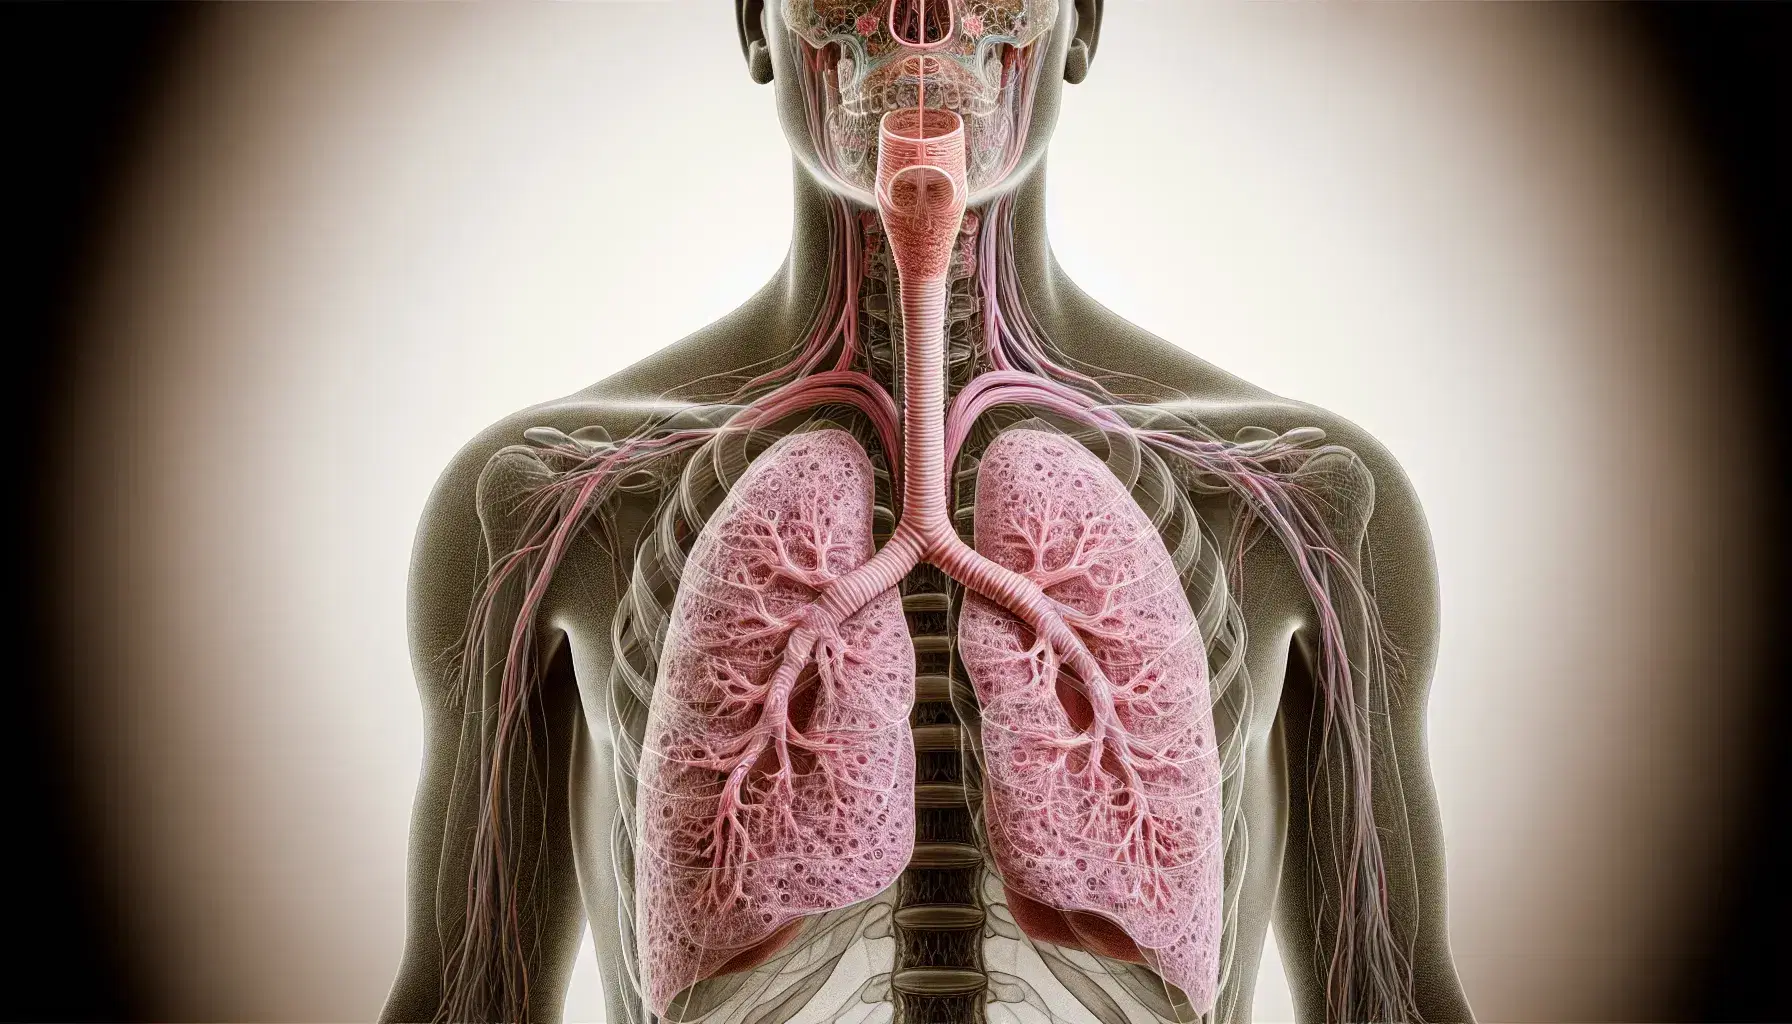 Vista anatómica del sistema respiratorio humano con tráquea, bronquios y pulmones esponjosos en tonos rosados y rojos, sin texto ni símbolos.